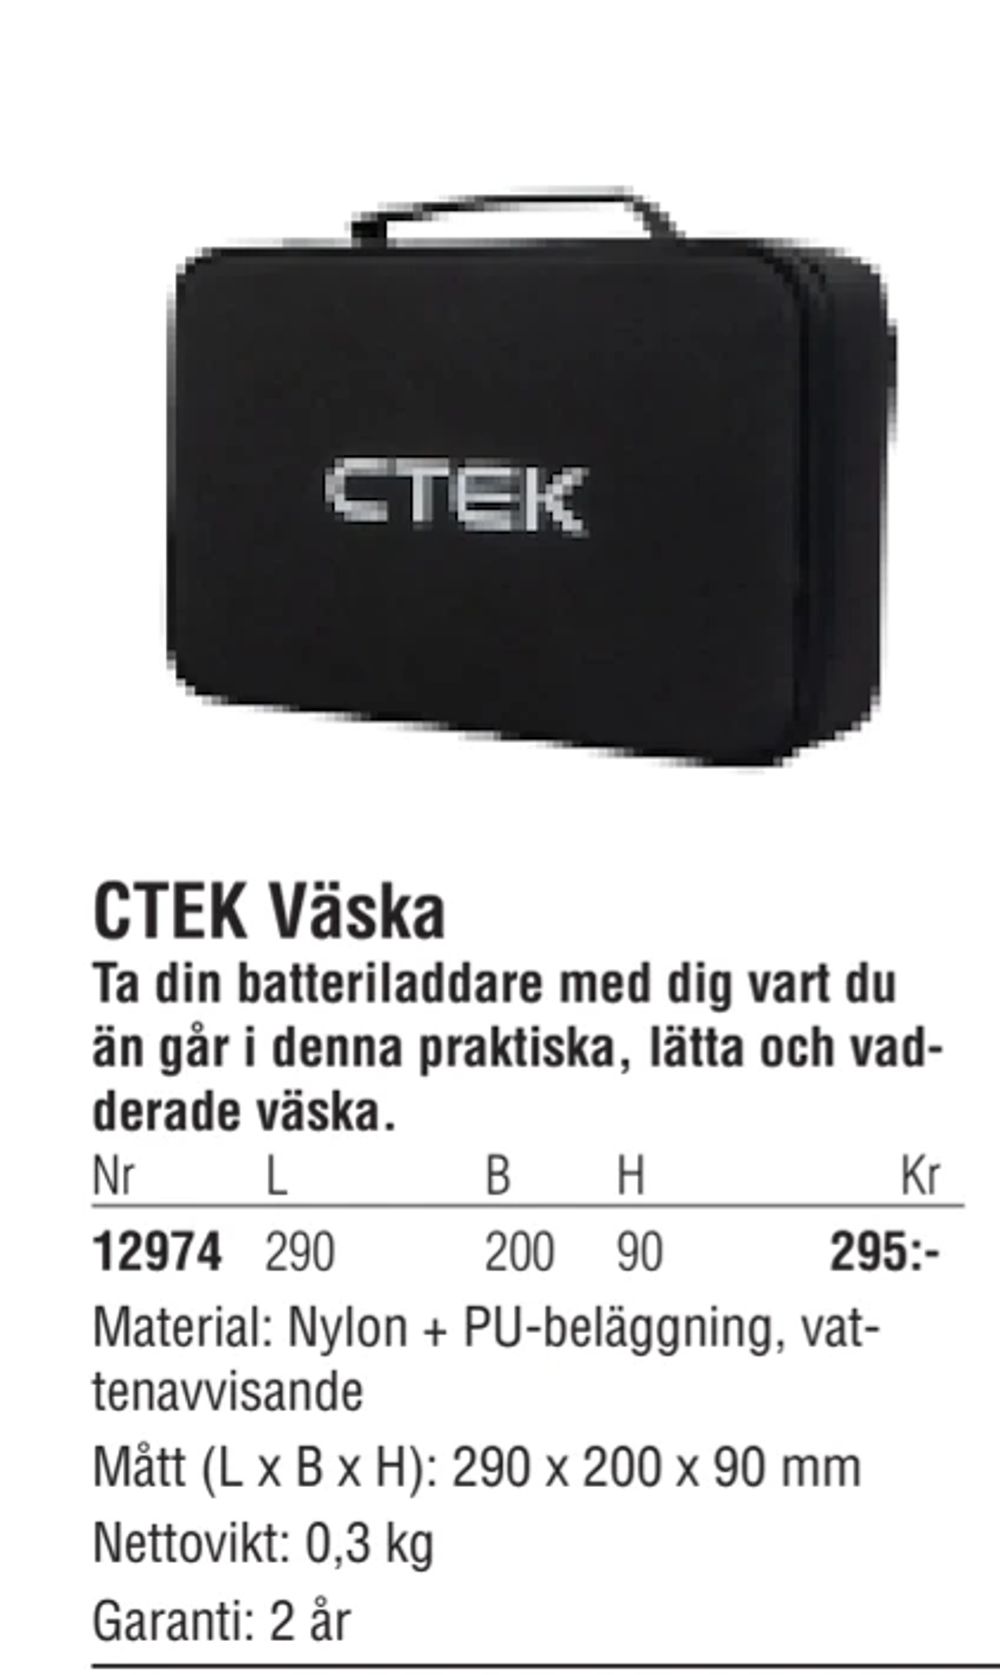 Erbjudanden på CTEK Väska från Erlandsons Brygga för 295 kr